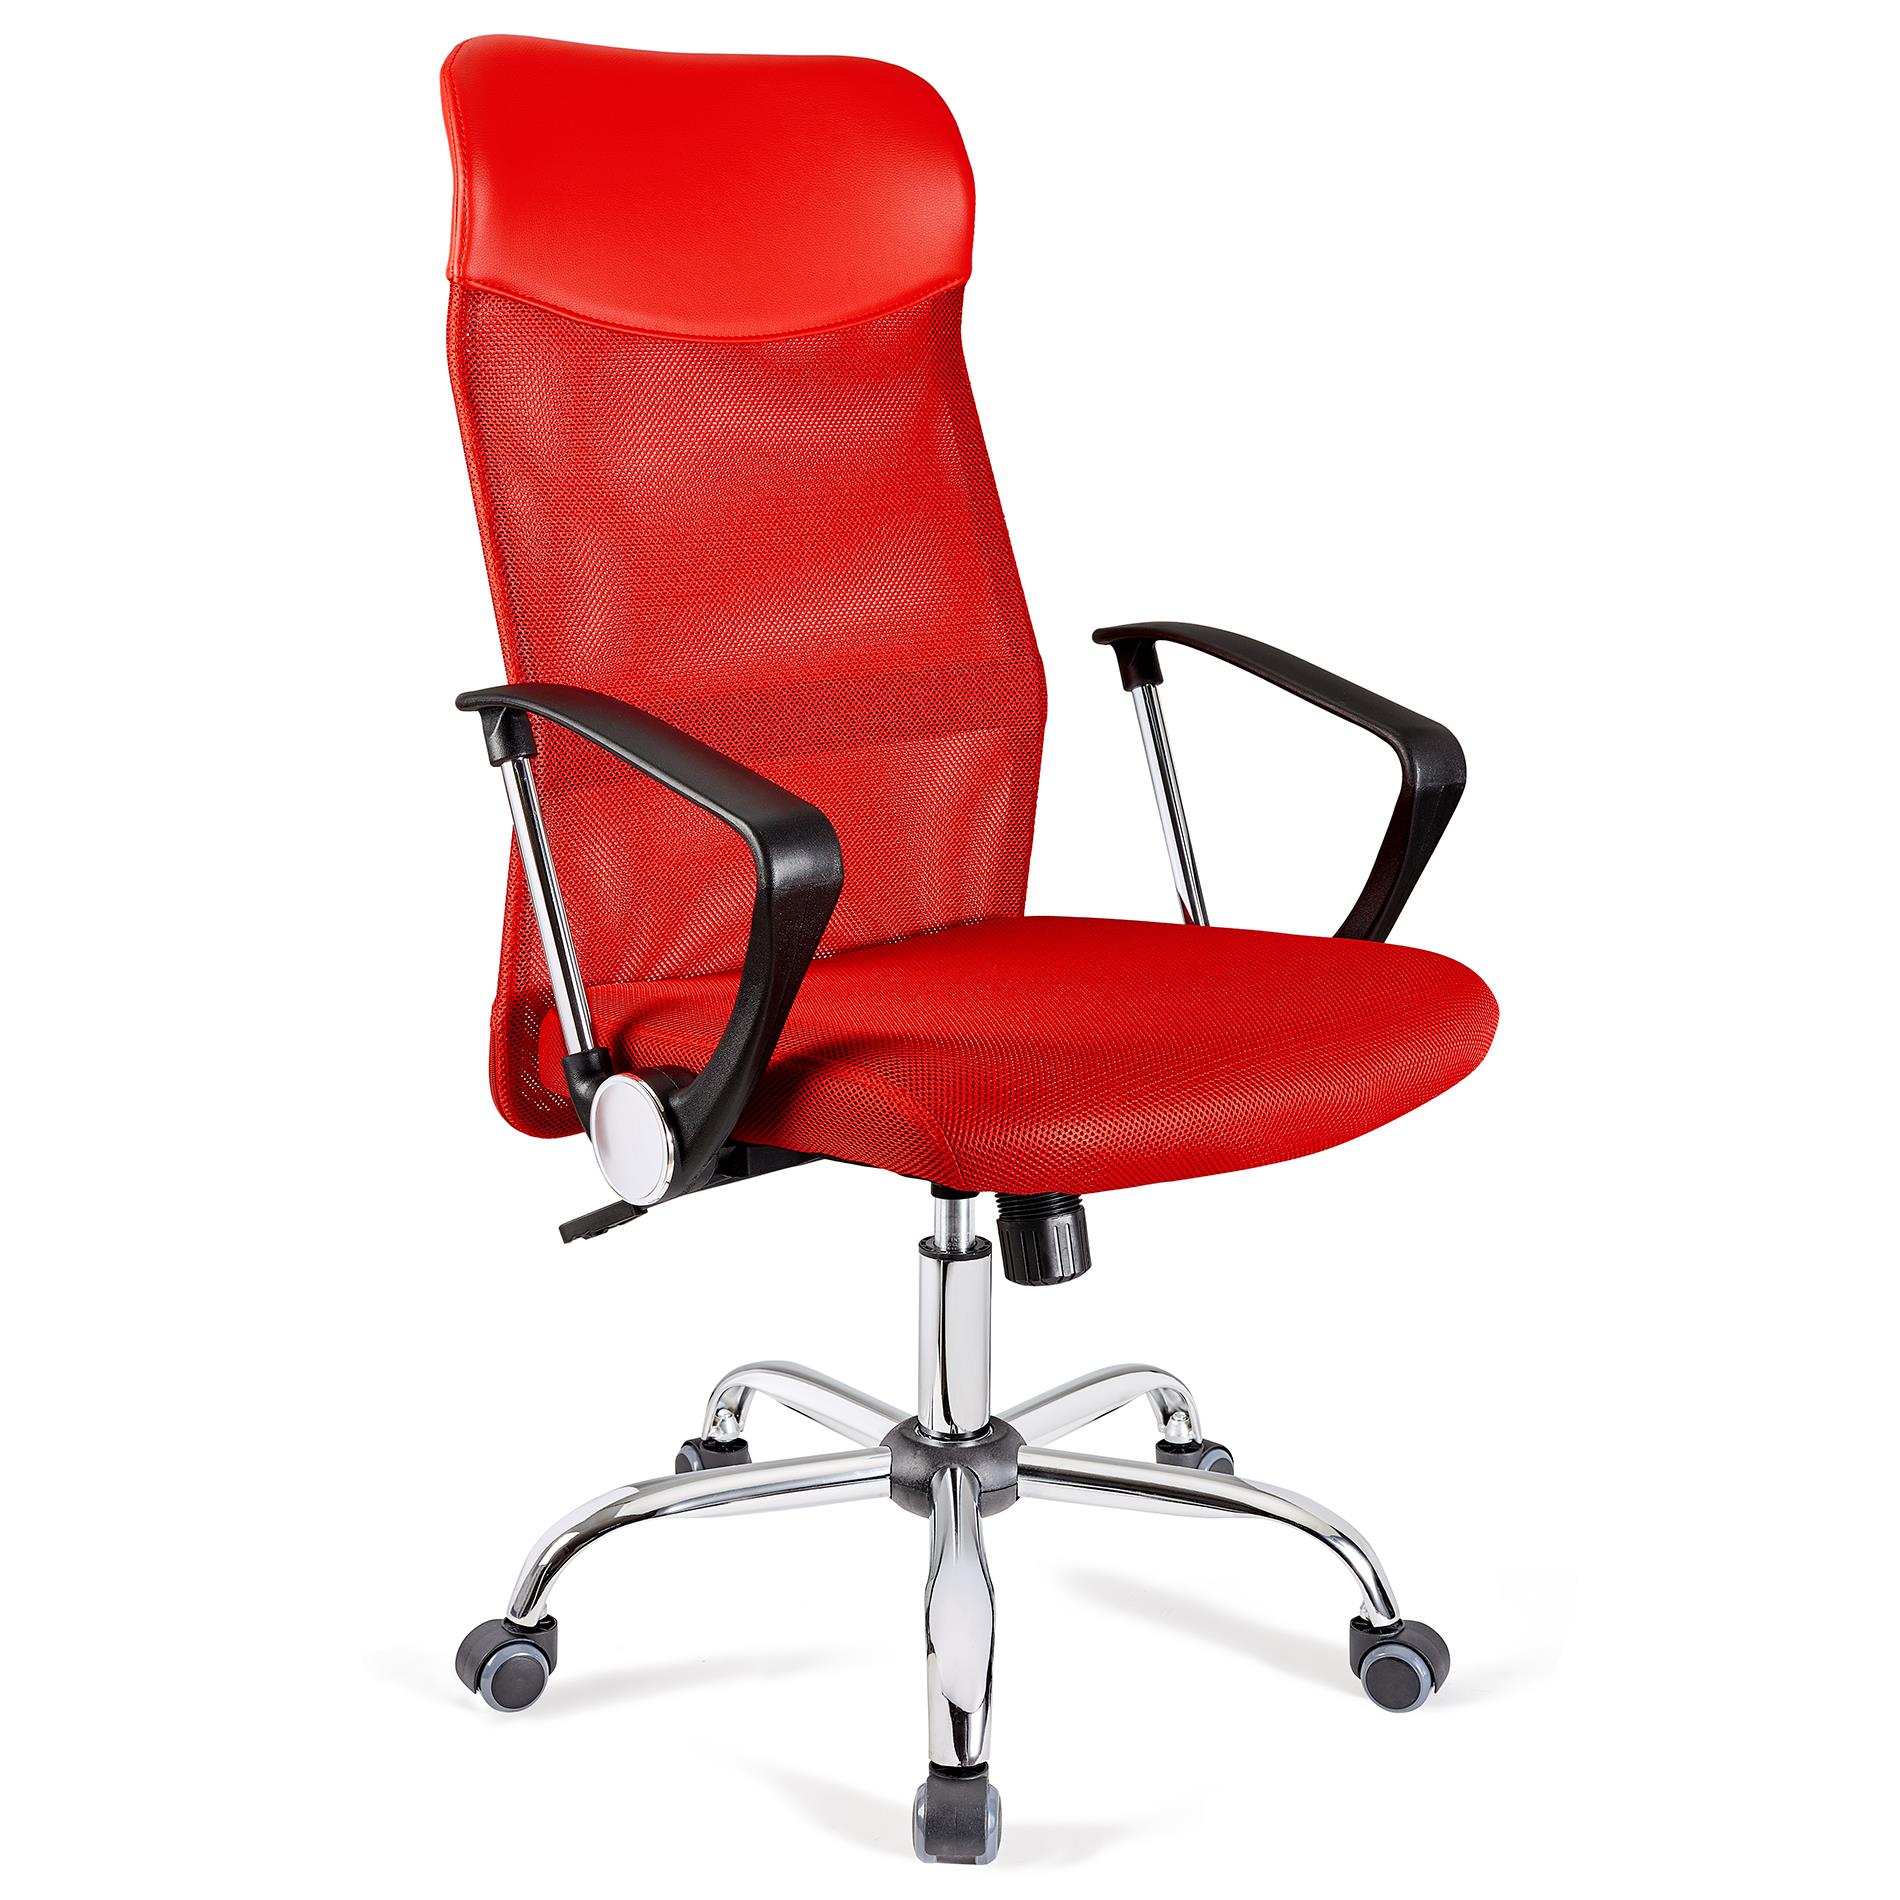 Chaise de bureau ASPEN, Maille Respirable et cuir, assise rembourrée, Prix incroyable, Rouge